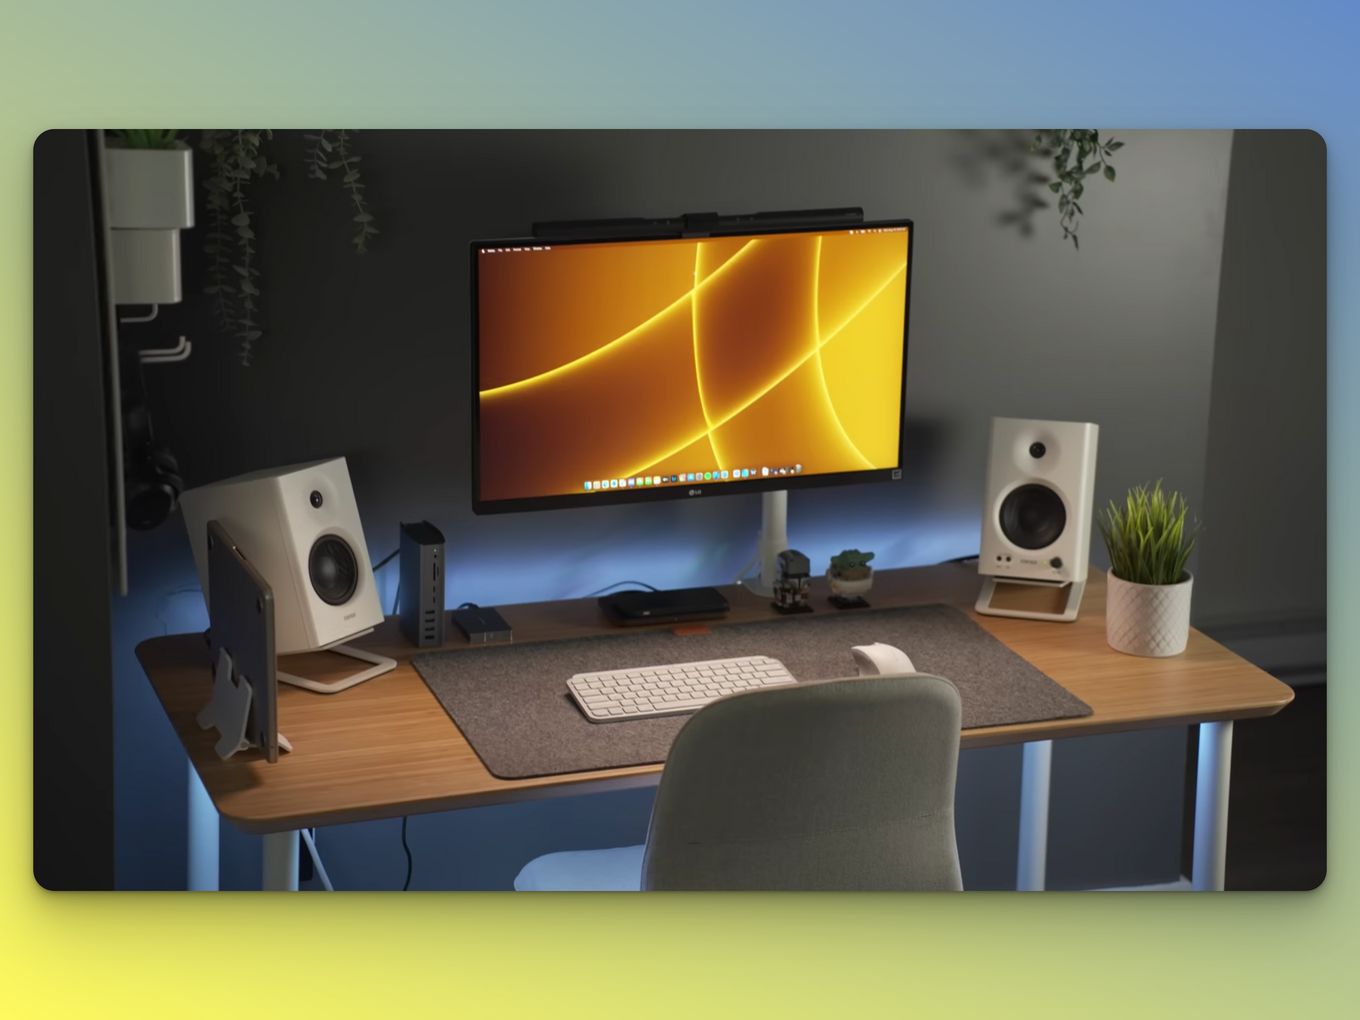 Basic Mac Desktop With Speakers